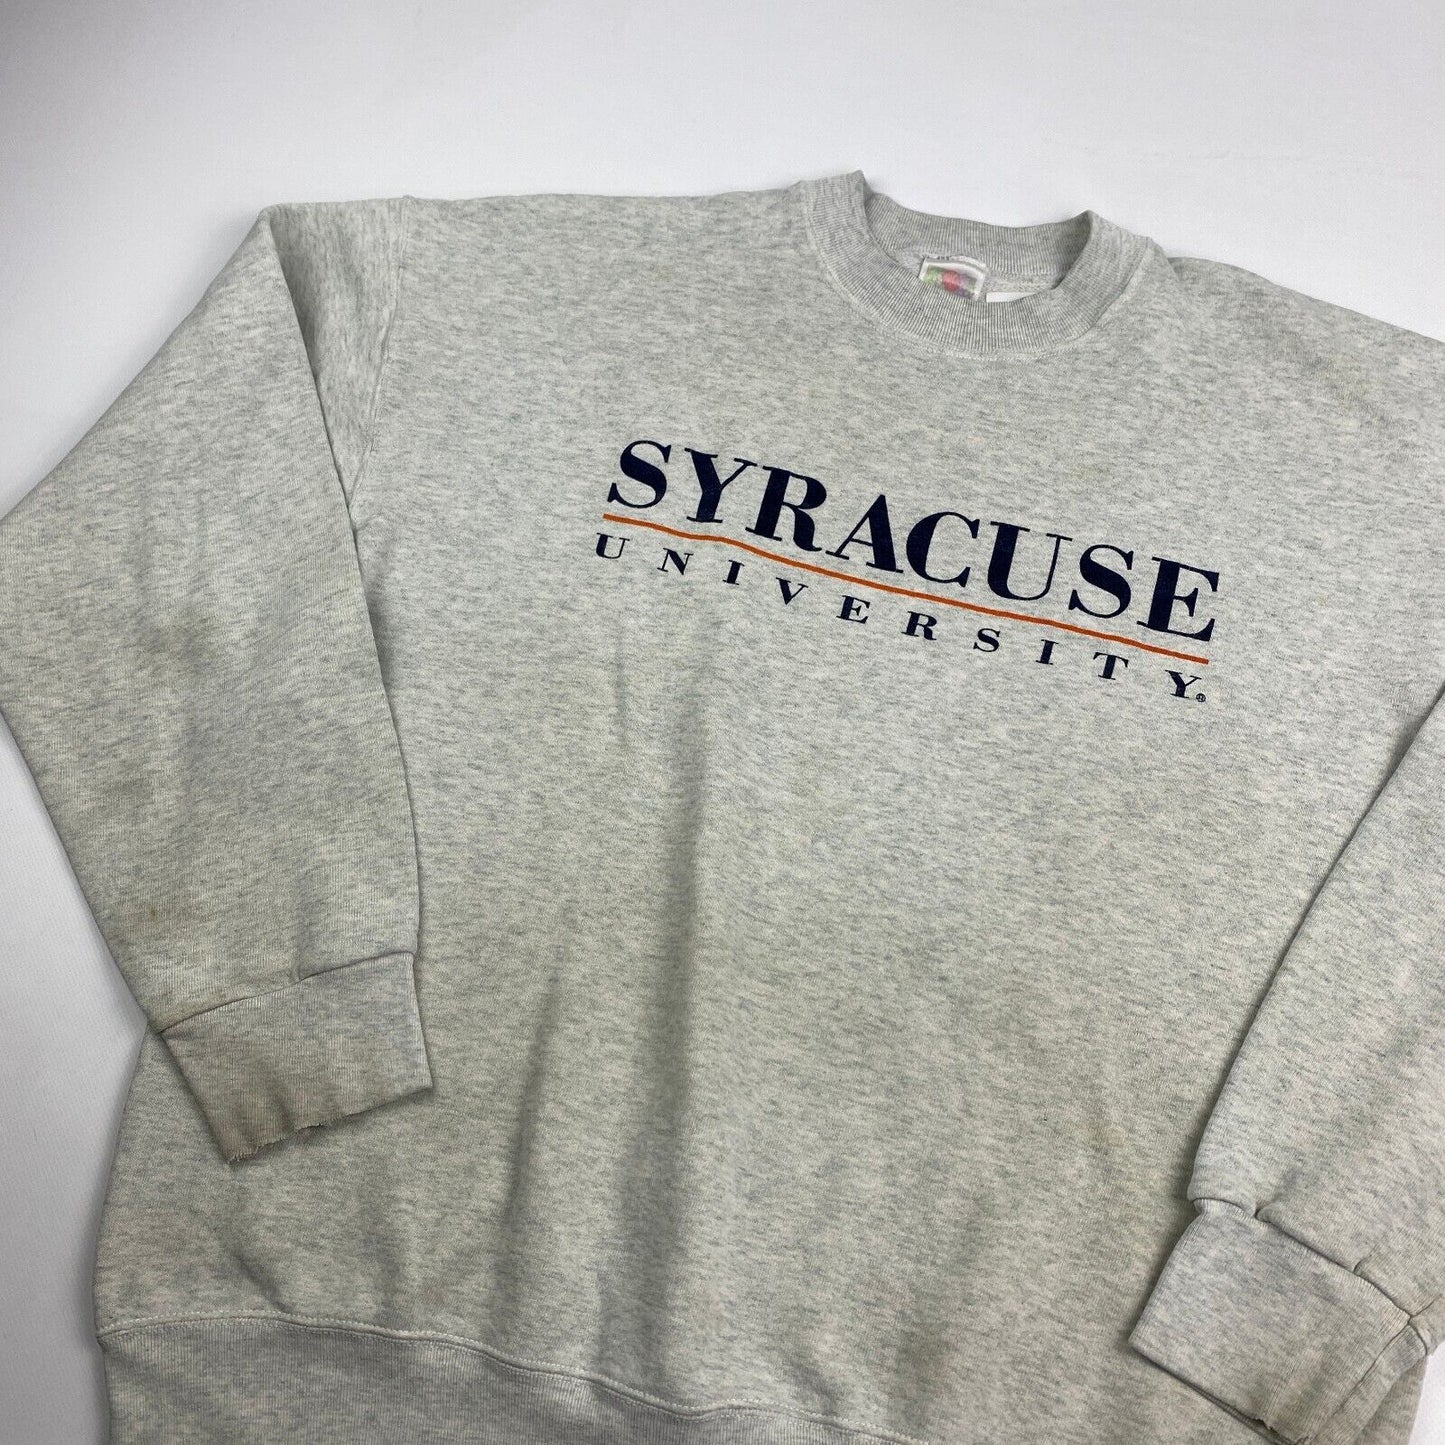 VINTAGE 90s Syracuse University Grey Crewneck Sweater sz XL Mens